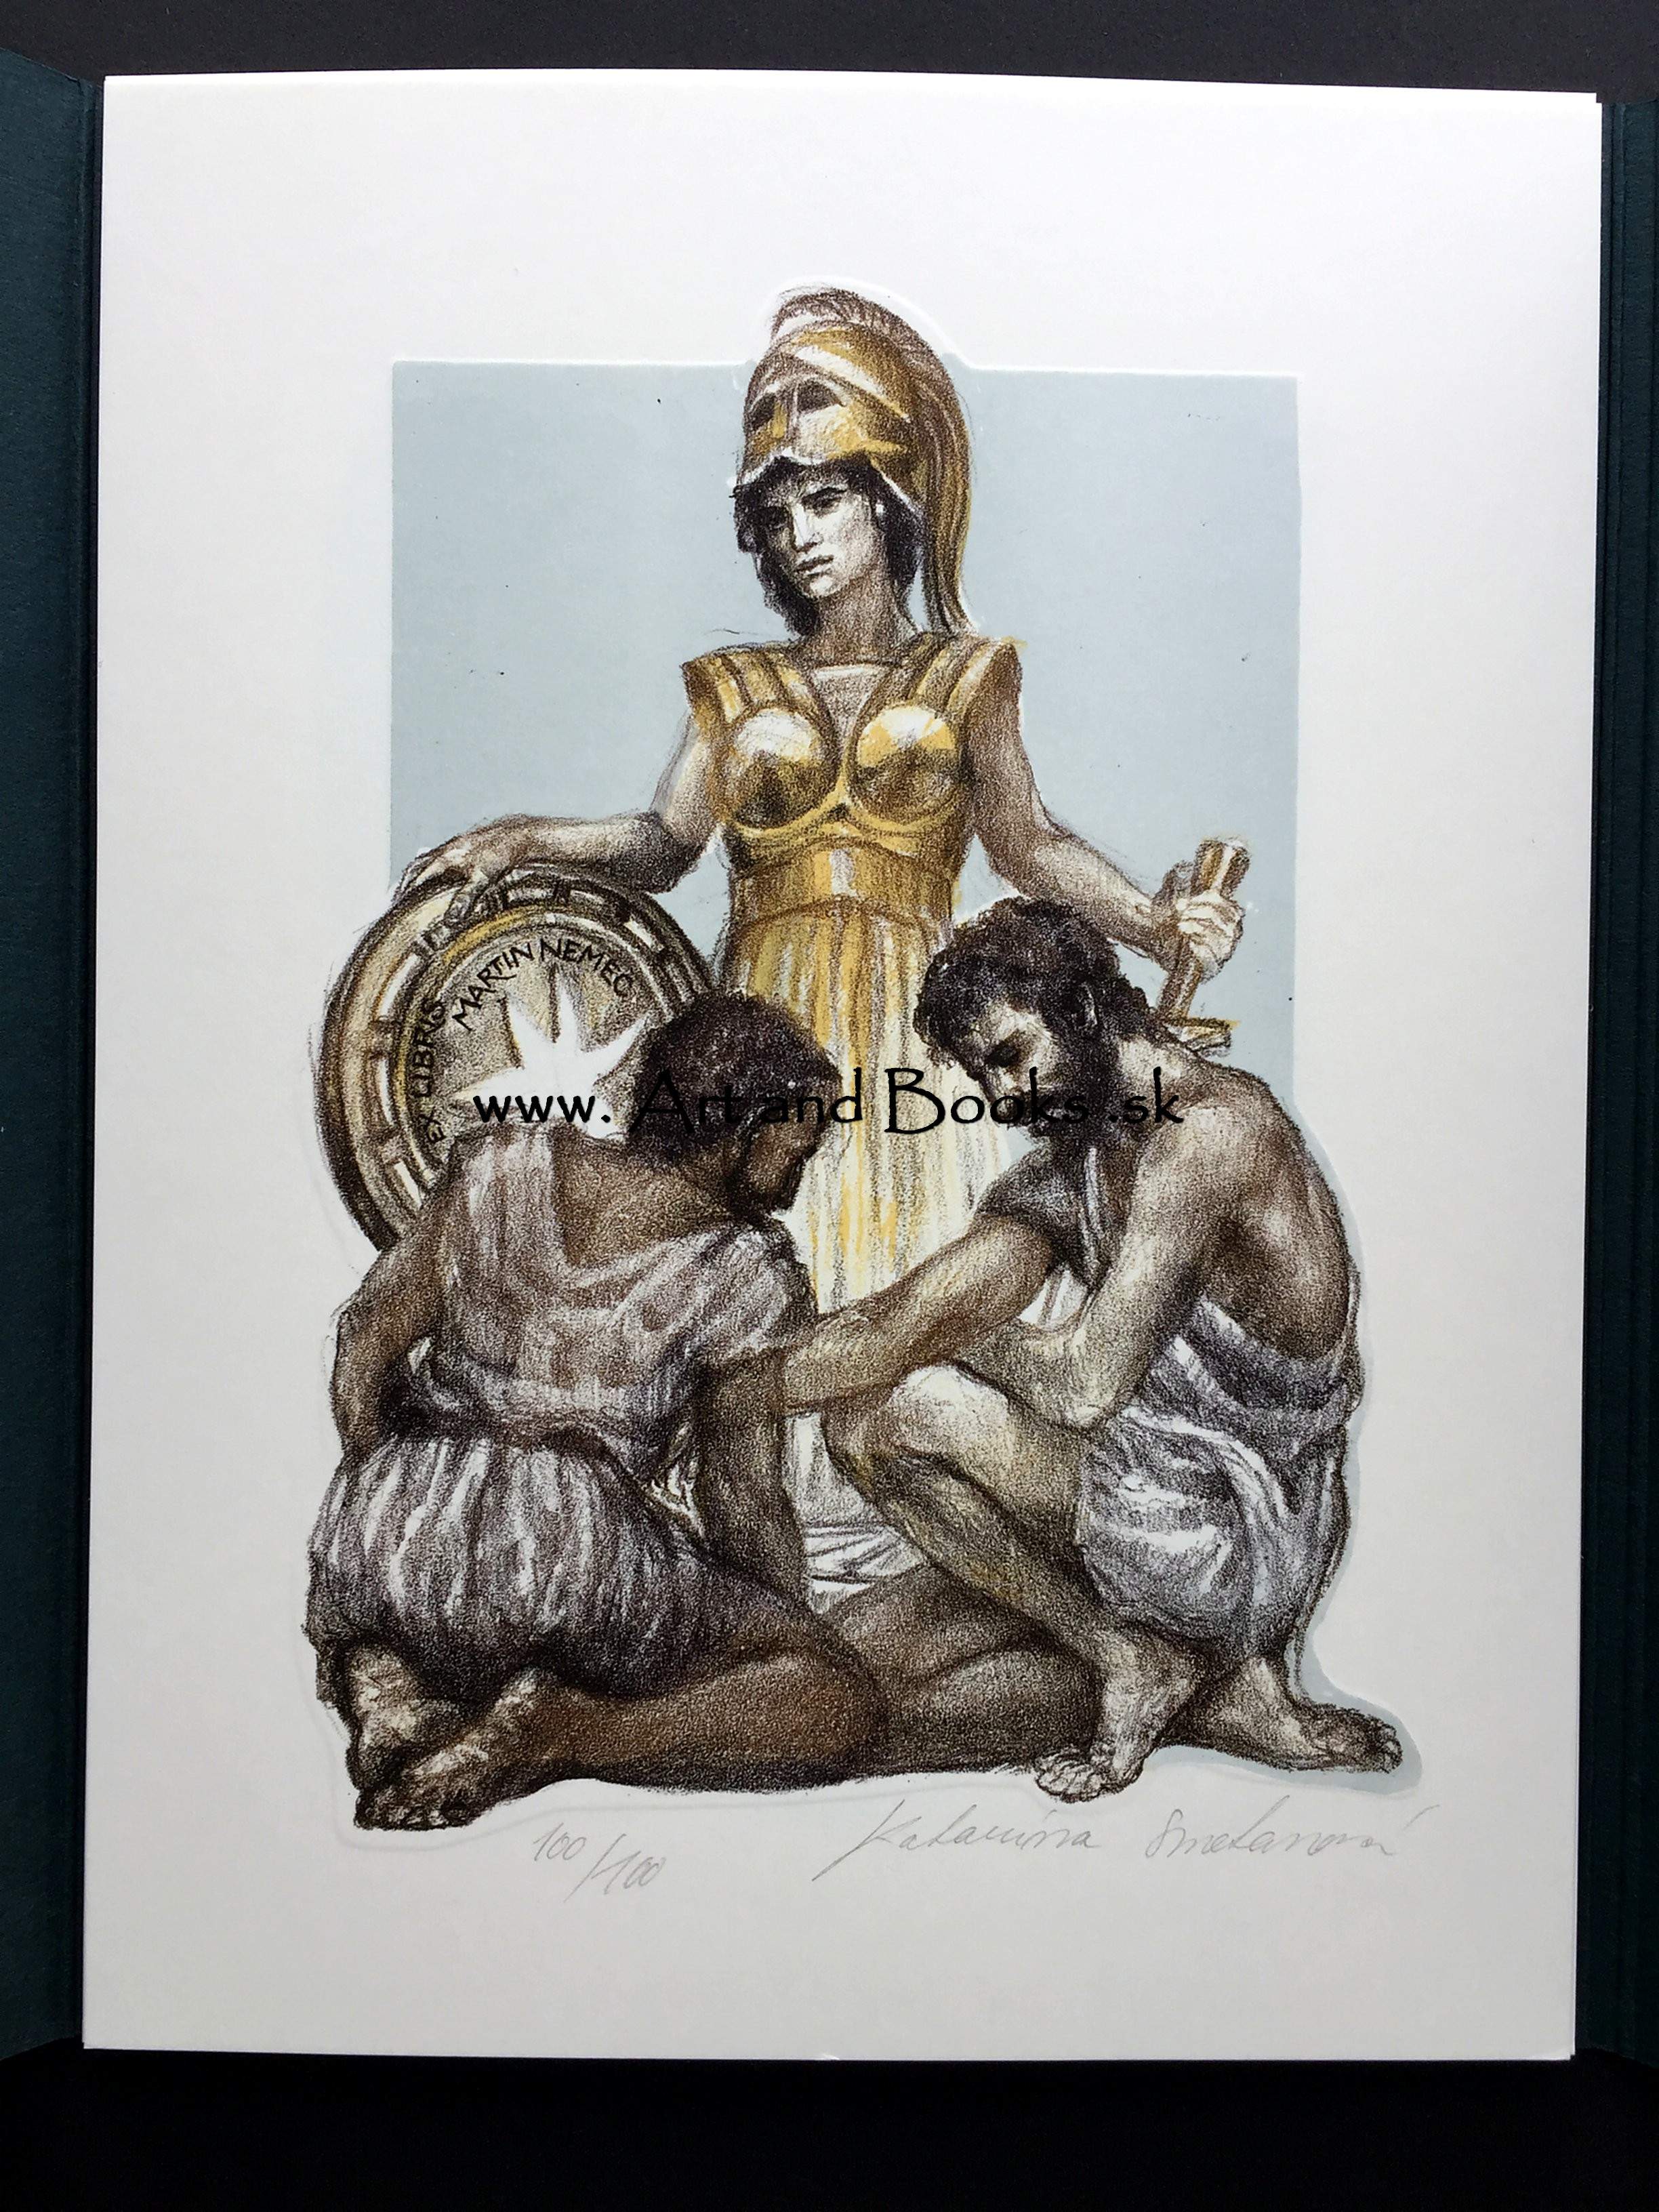 Katarína SMETANOVÁ - Odysseus cycle 10x print	●	E0020